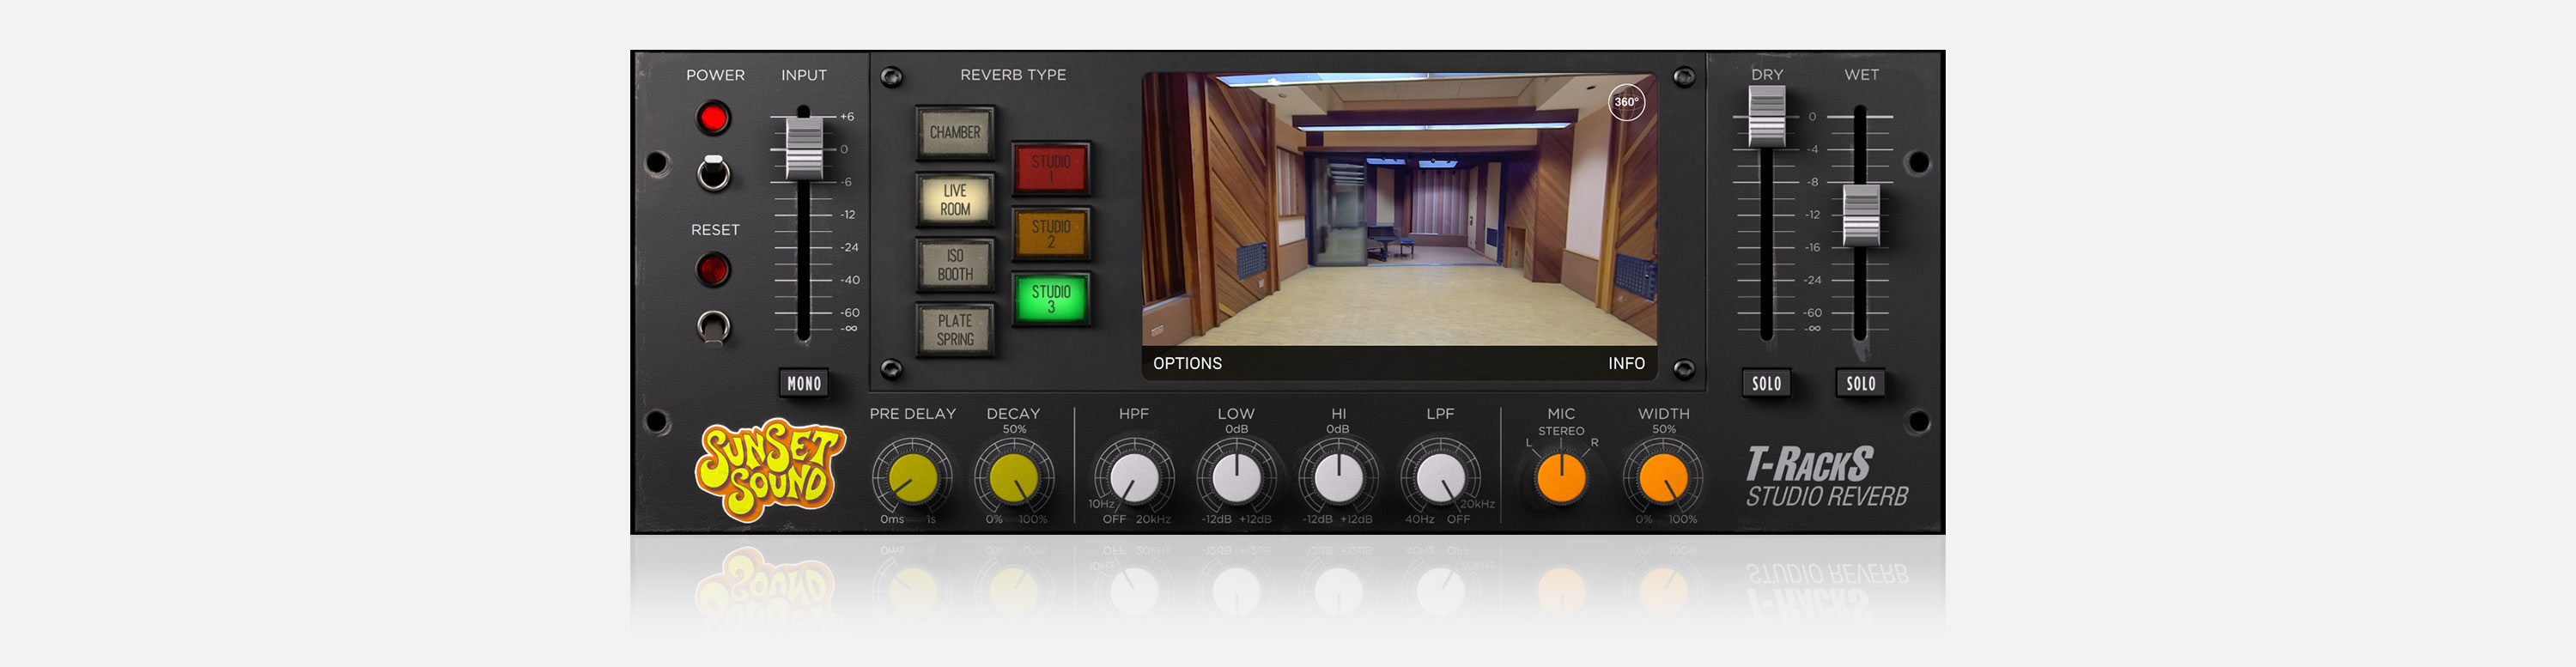 IK Multimedia(ソフトウェア) T-RackS Sunset Sound Studio Reverb 